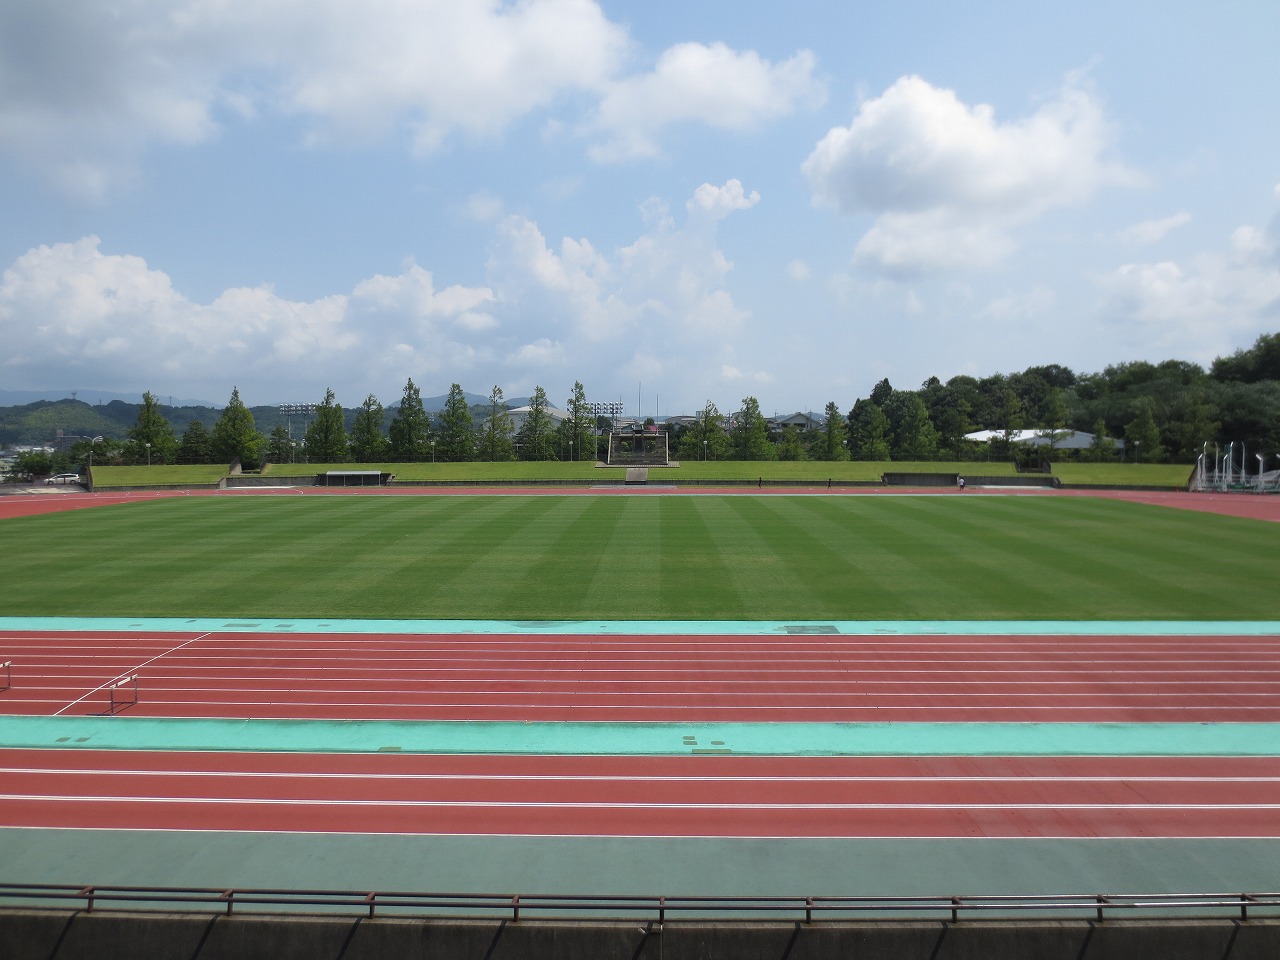 白い雲と青い空を背景に、中央に芝生の生えたグラウンドとその周囲を囲む赤い競走用トラックのある競技場を、真横から撮影した写真